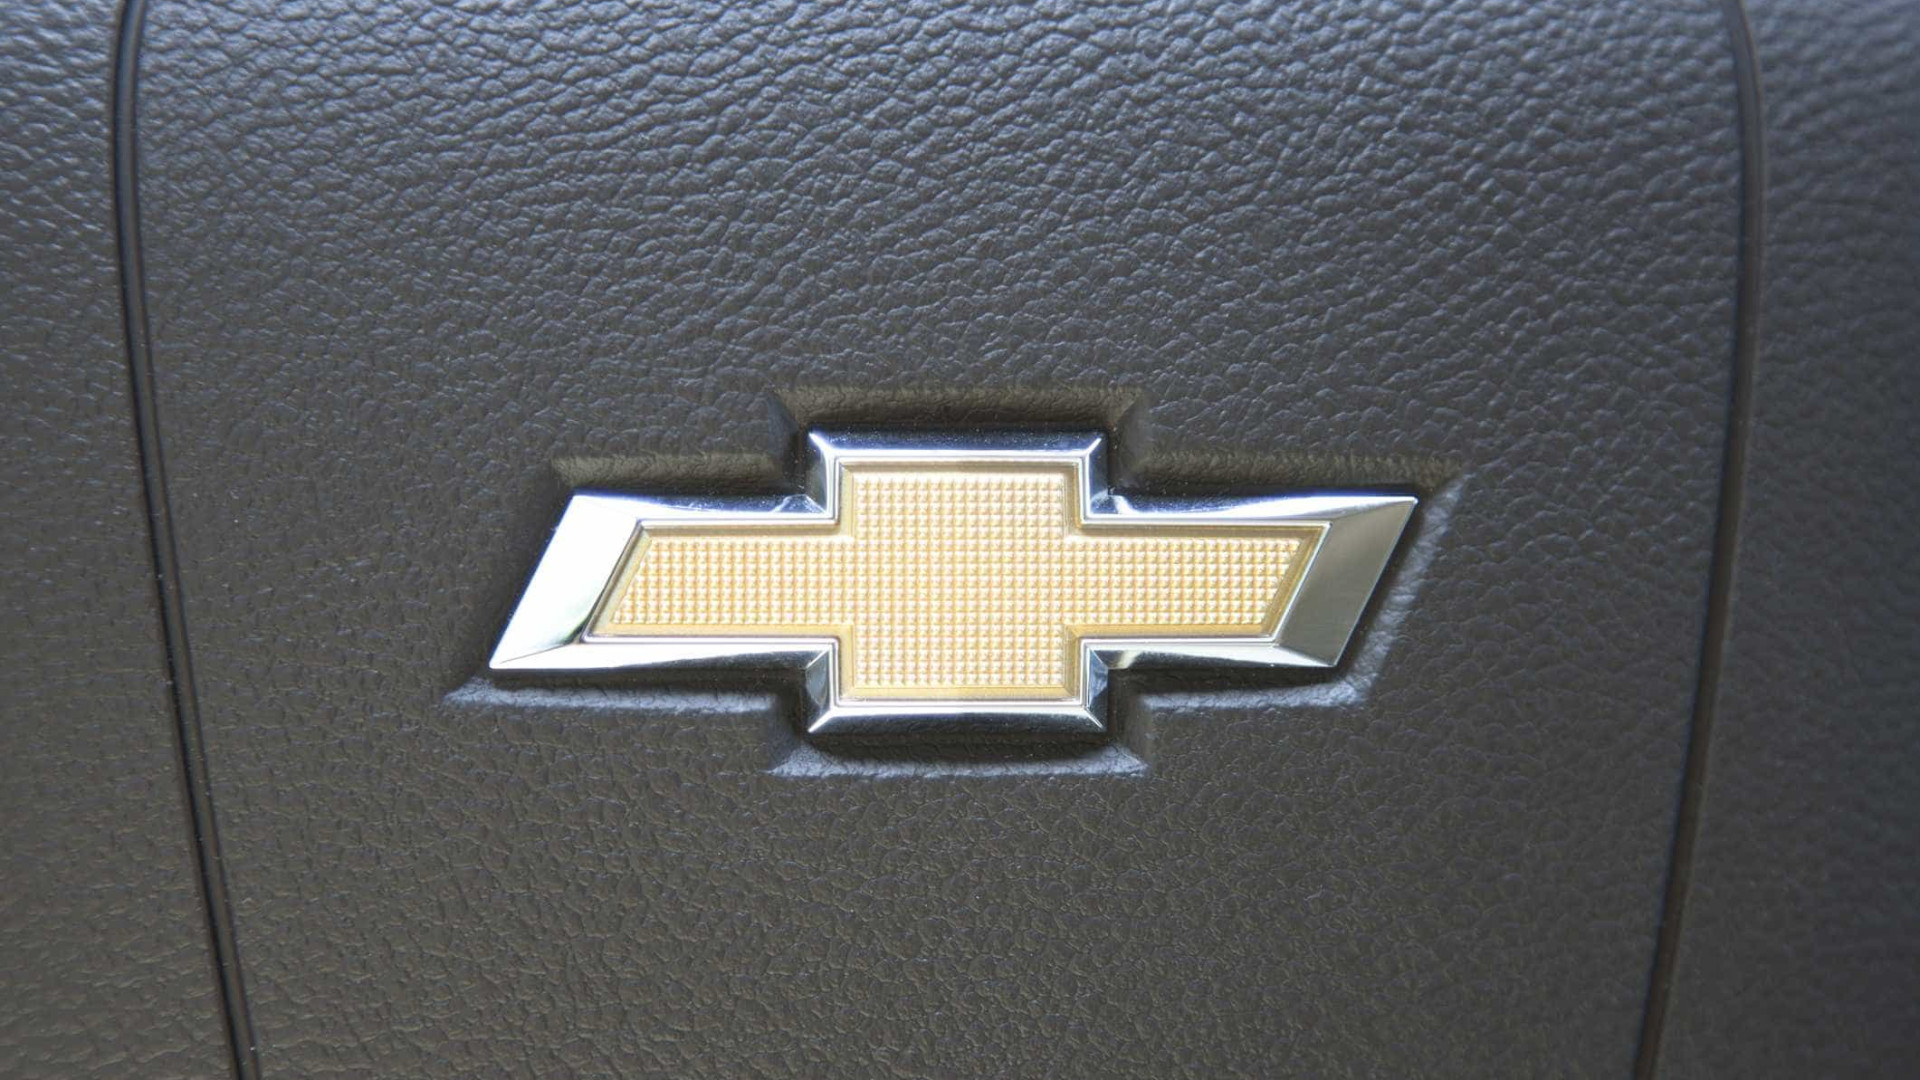 Chevrolet elÃ©trico estreia em 2019